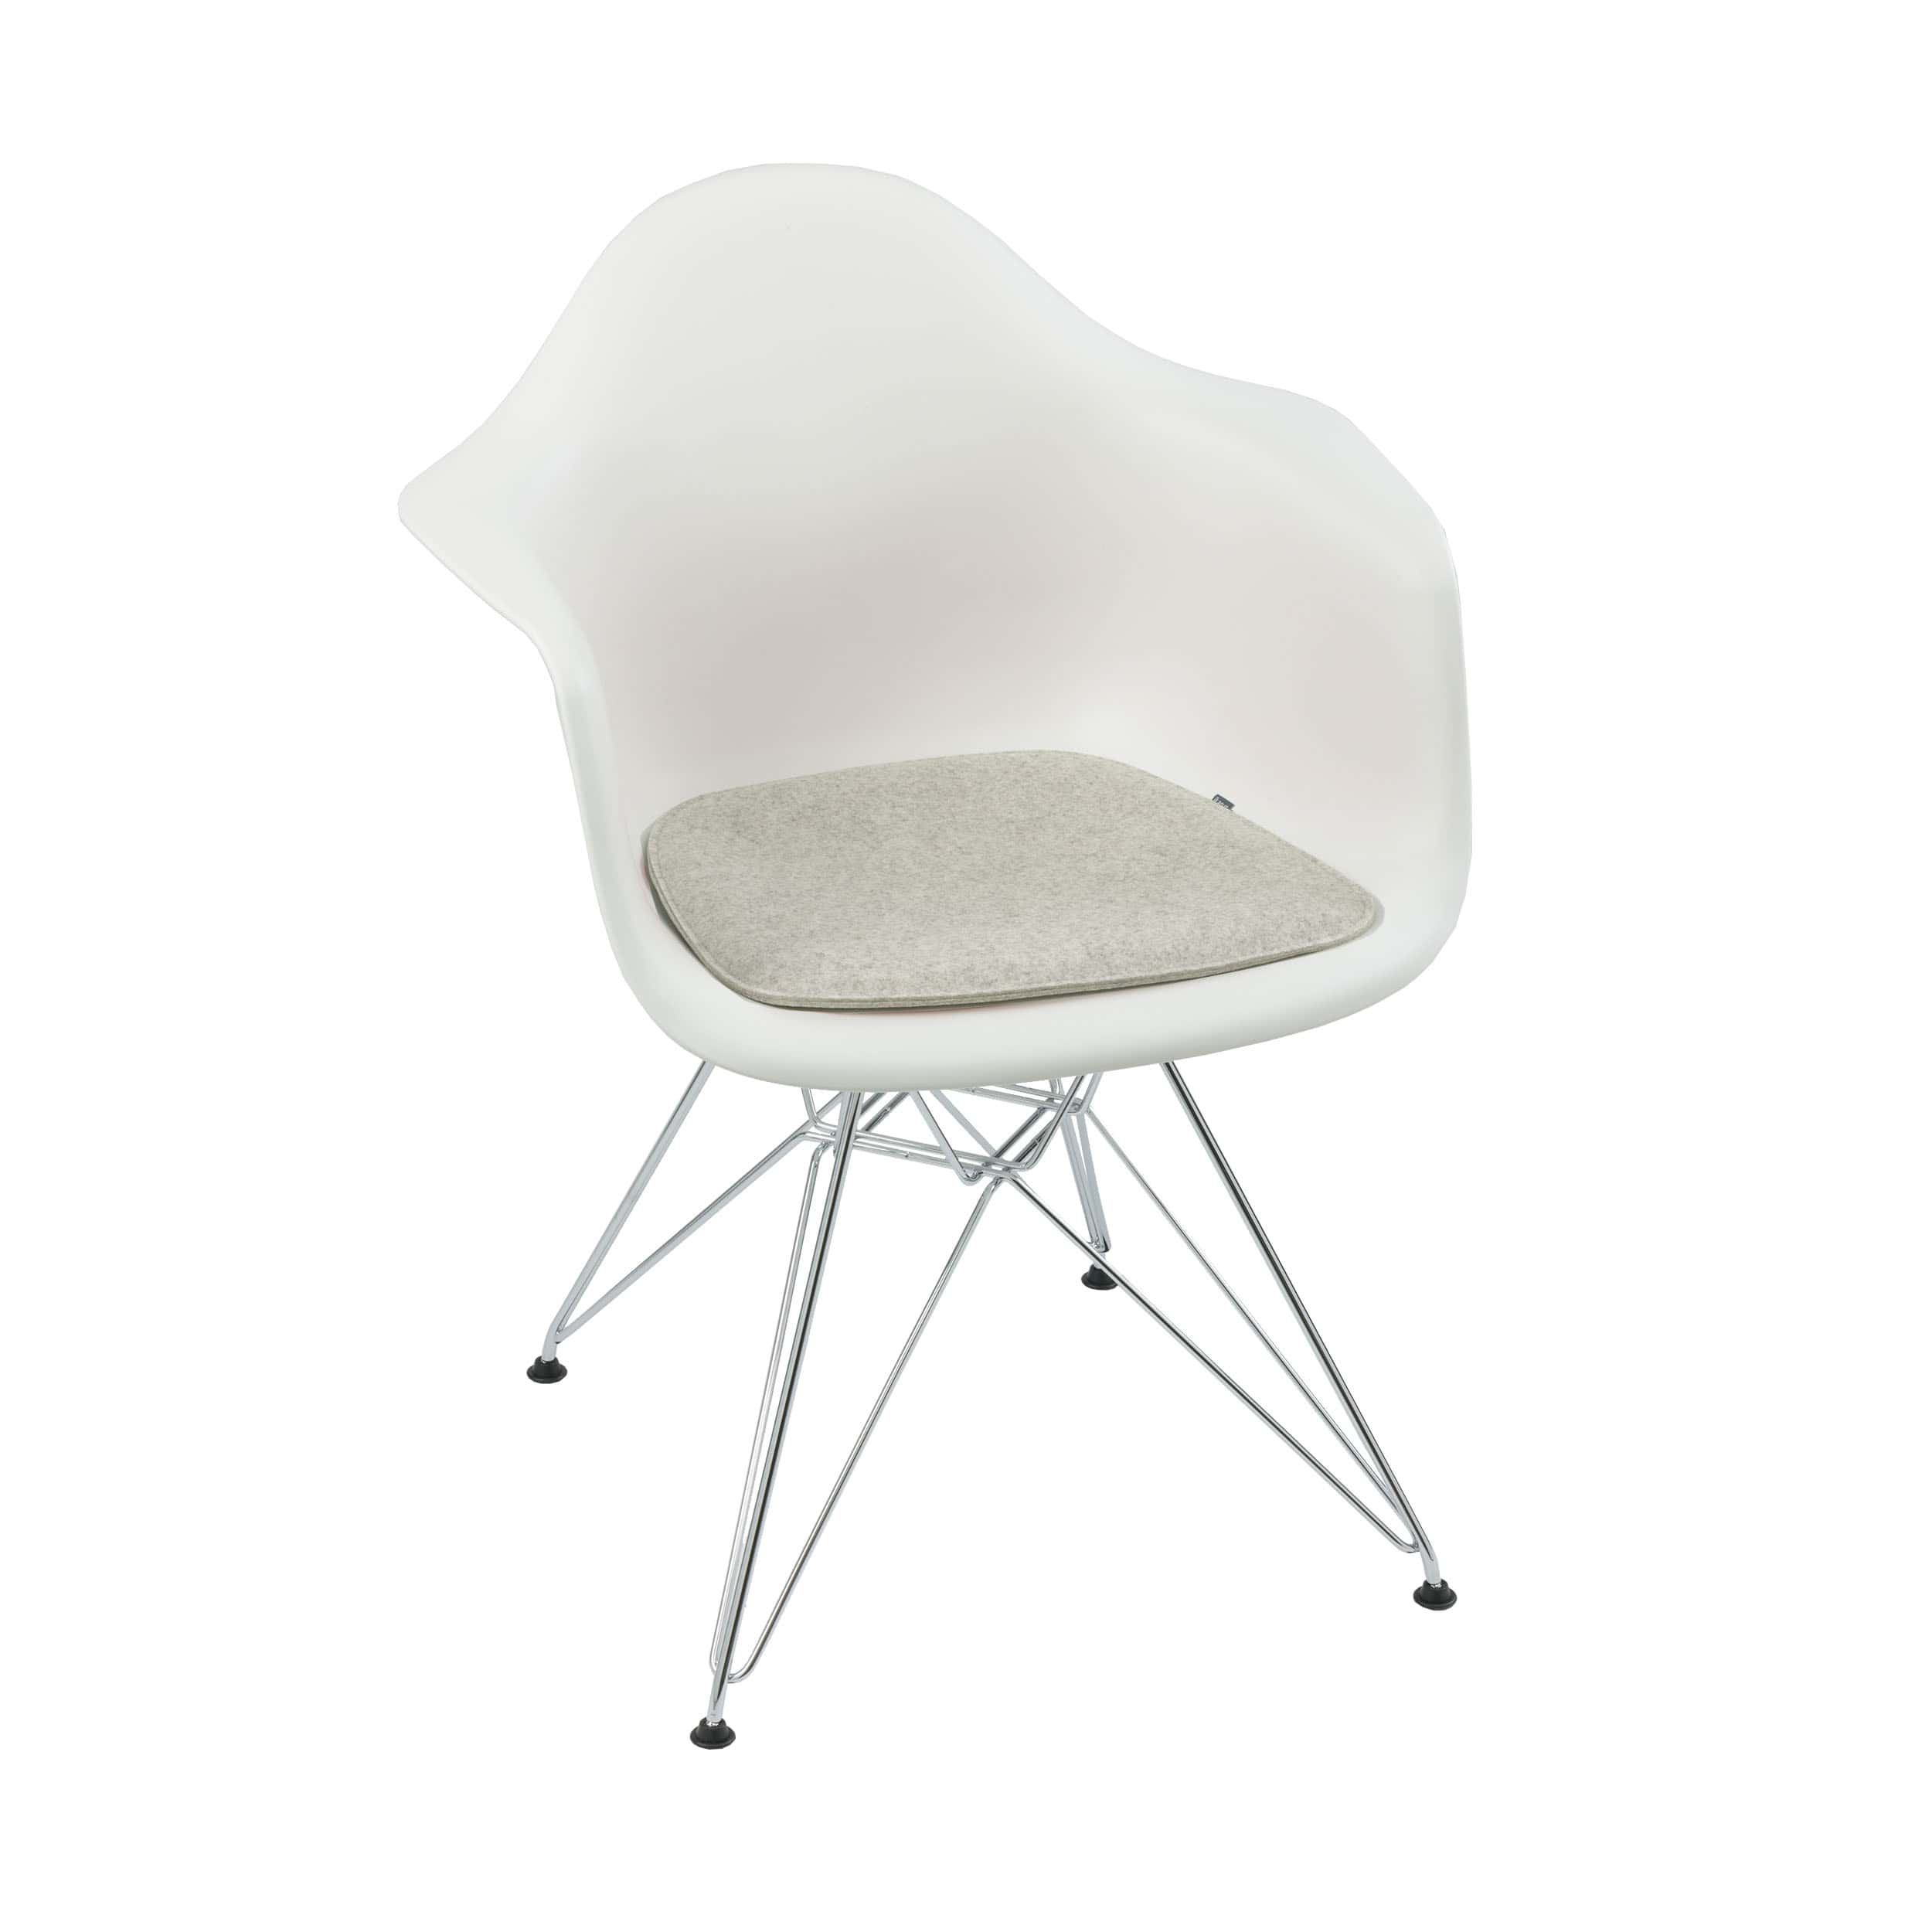 Filz Sitzauflage für Eames Plastic Chair, Armchair, Wollfilz 5mm